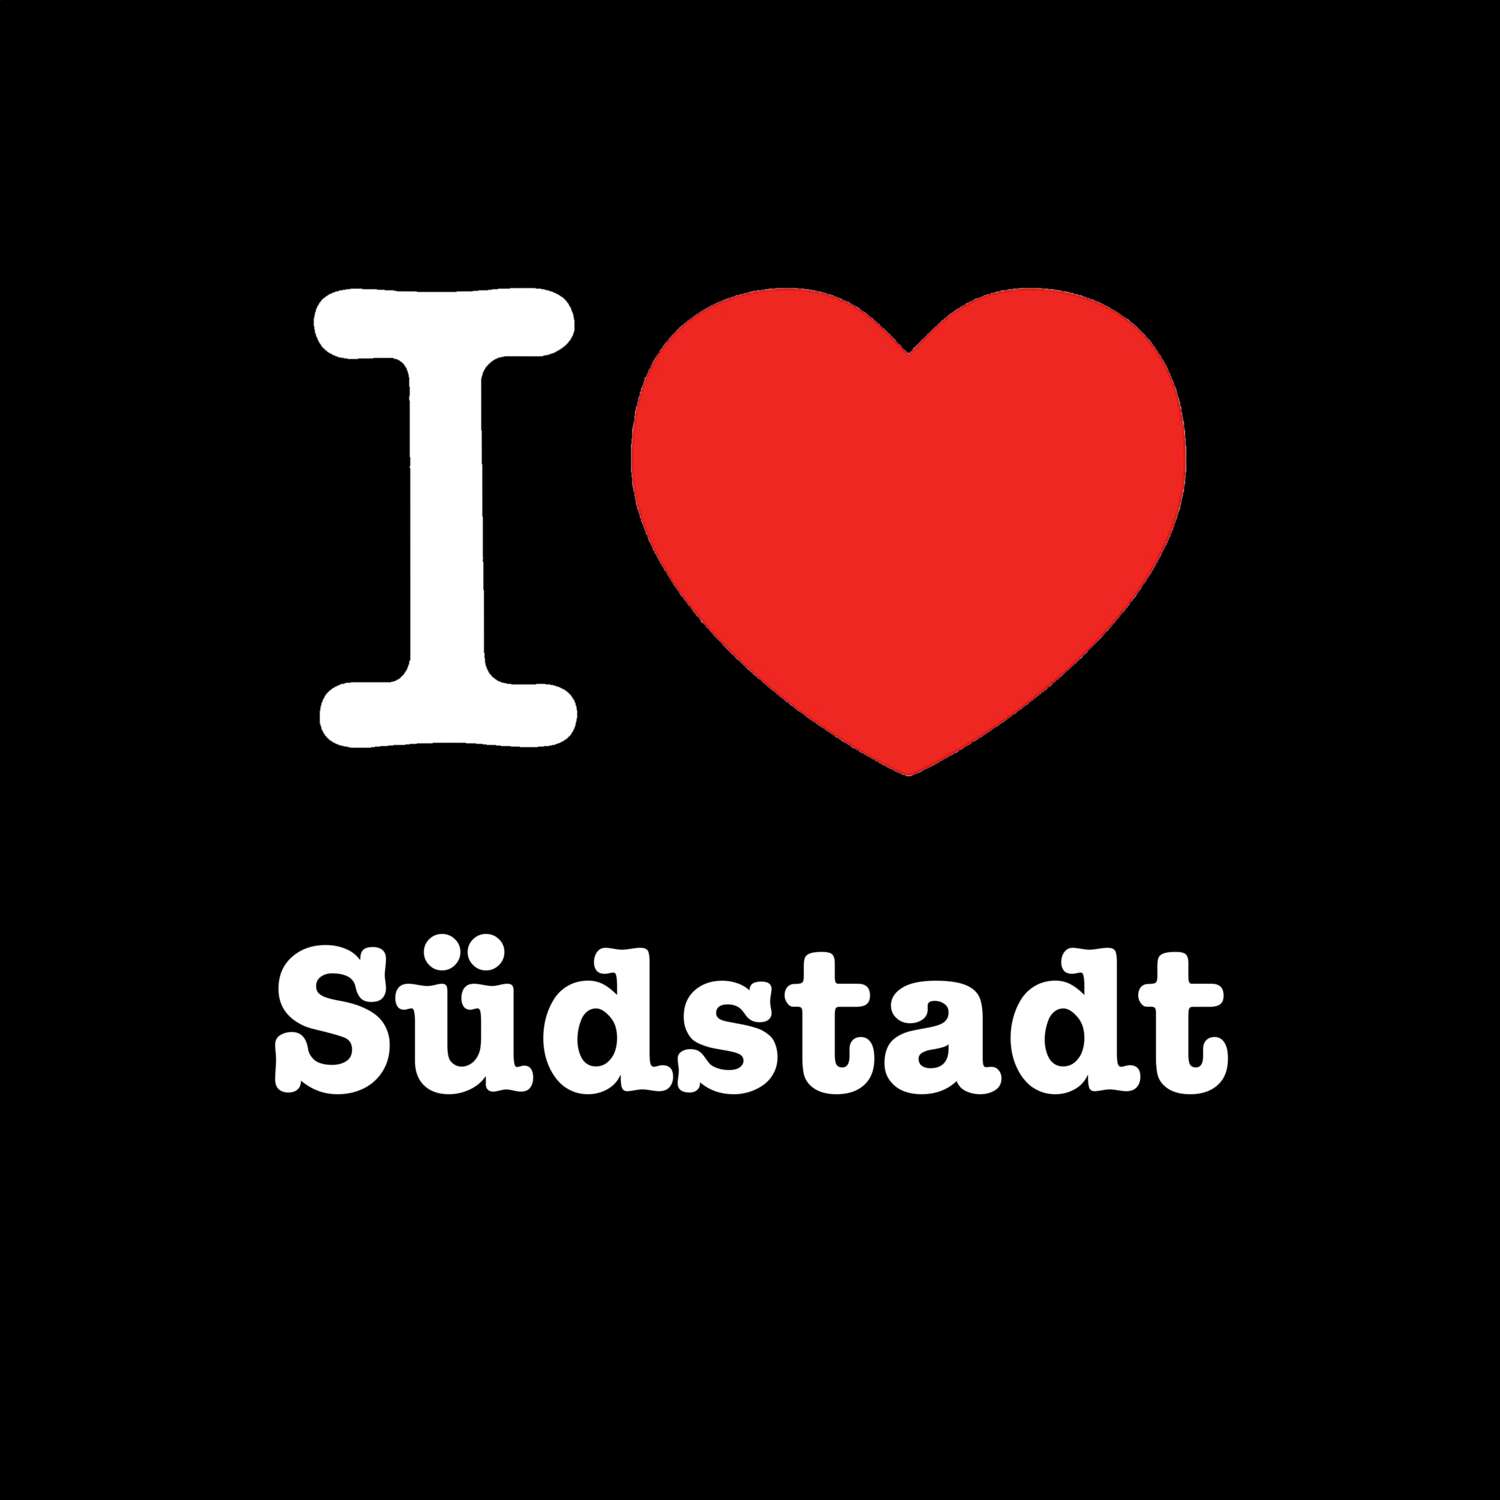 Südstadt T-Shirt »I love«